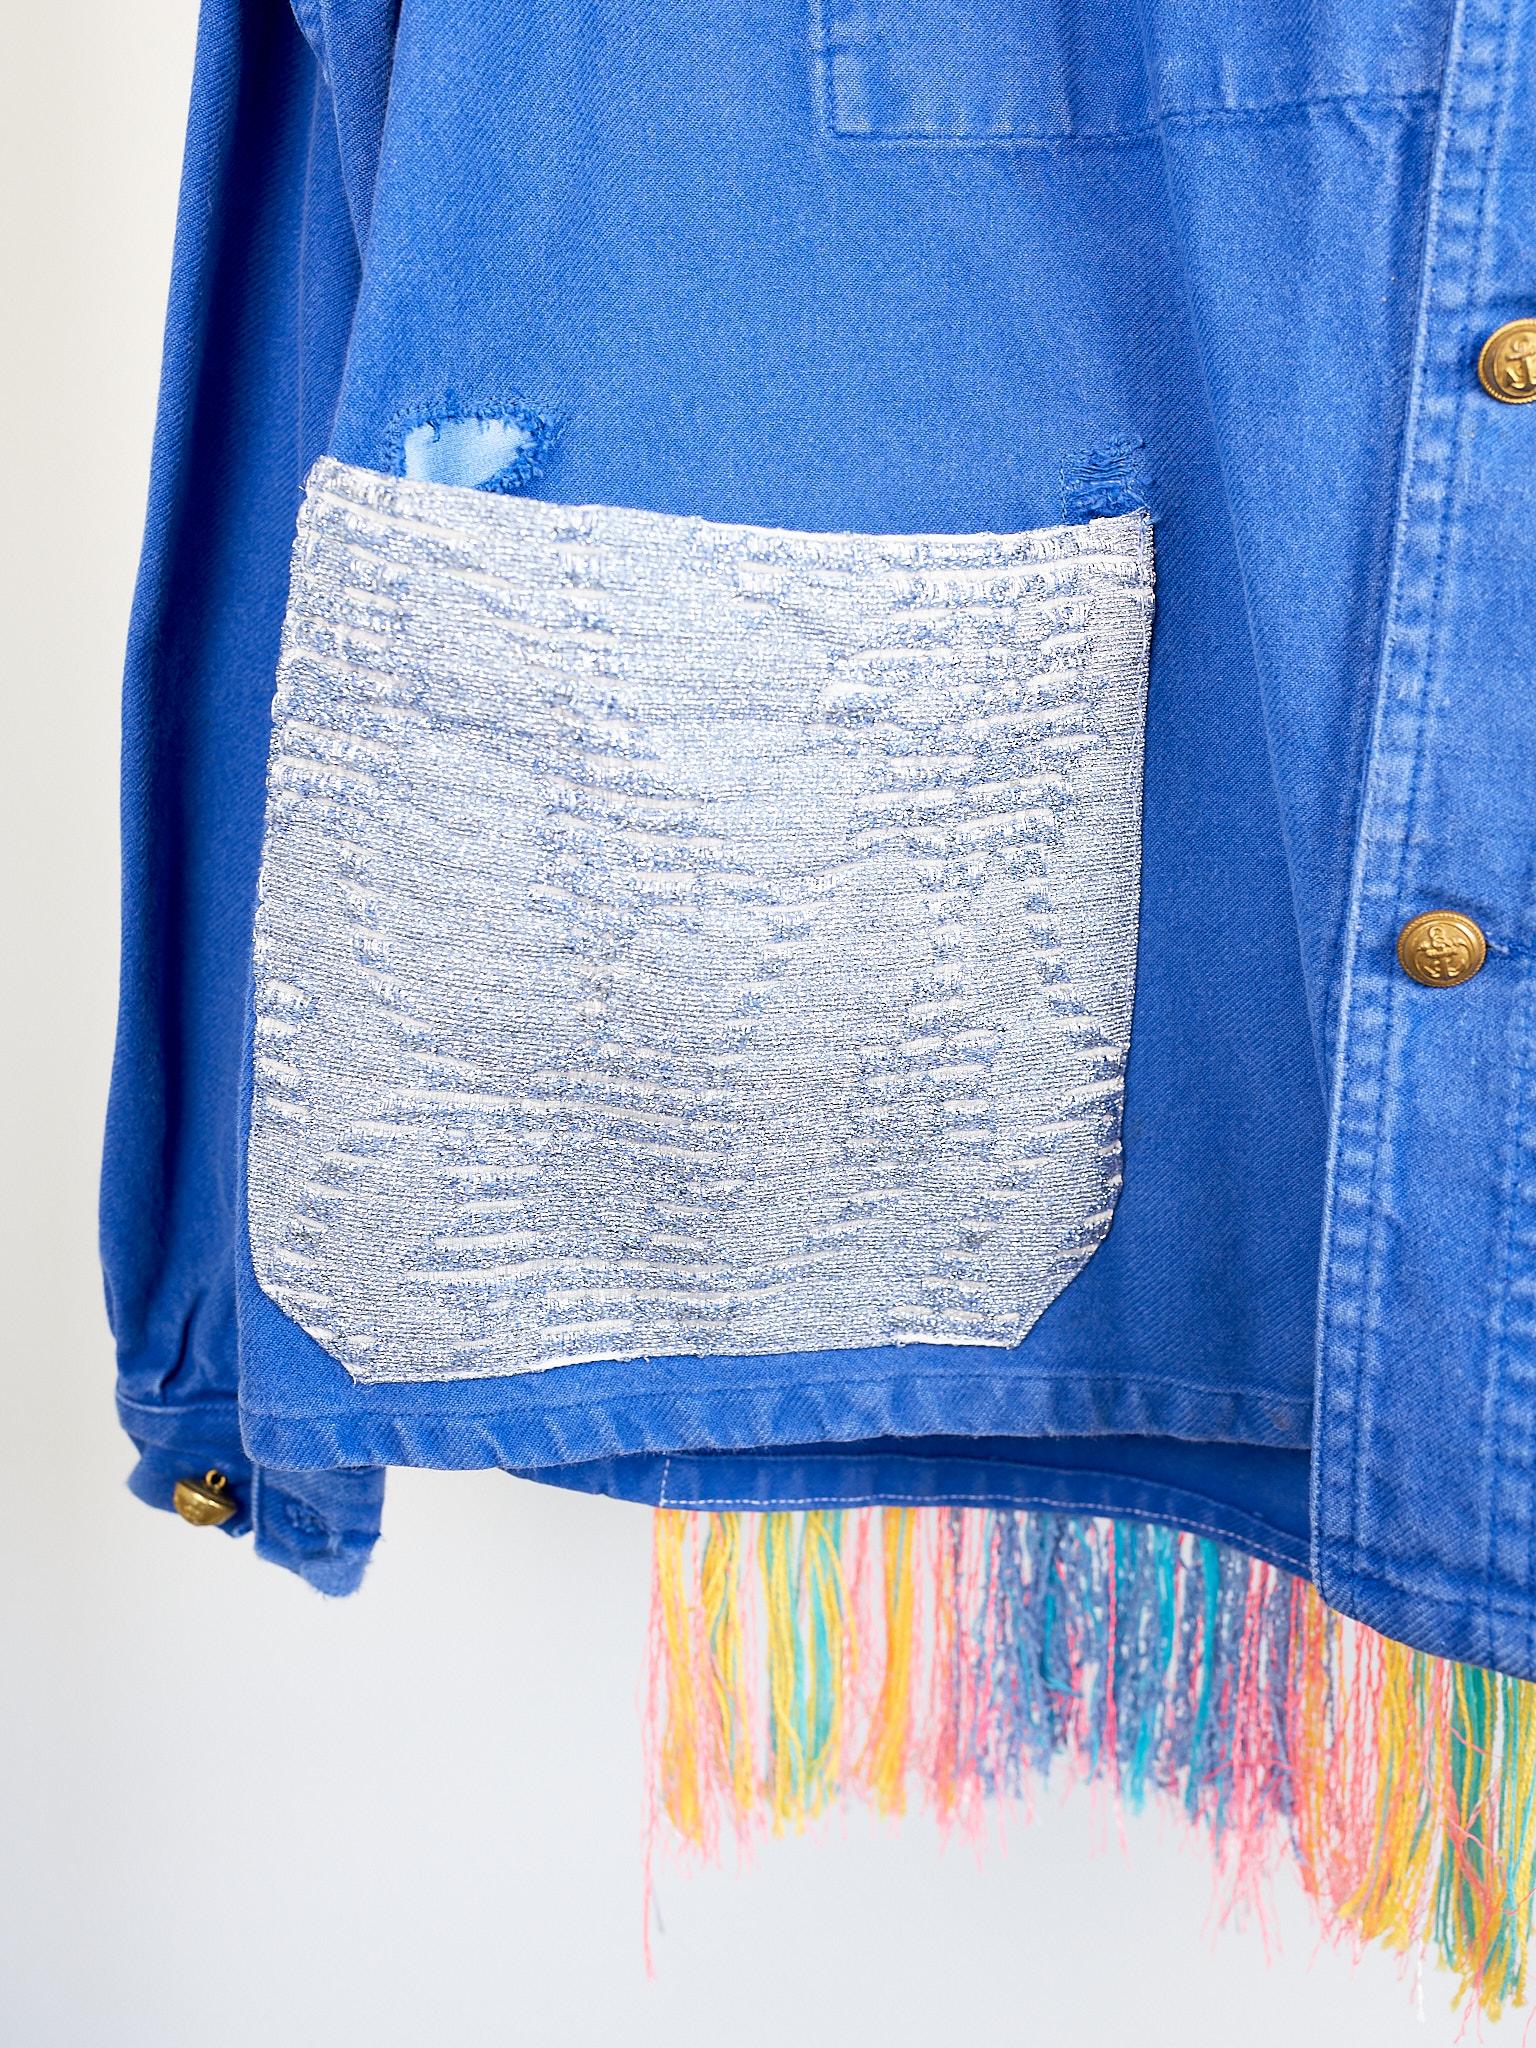 Cobalt Blue Jacket  Back Multi Color Pattern Fringes Glitter Pockets French Work 3